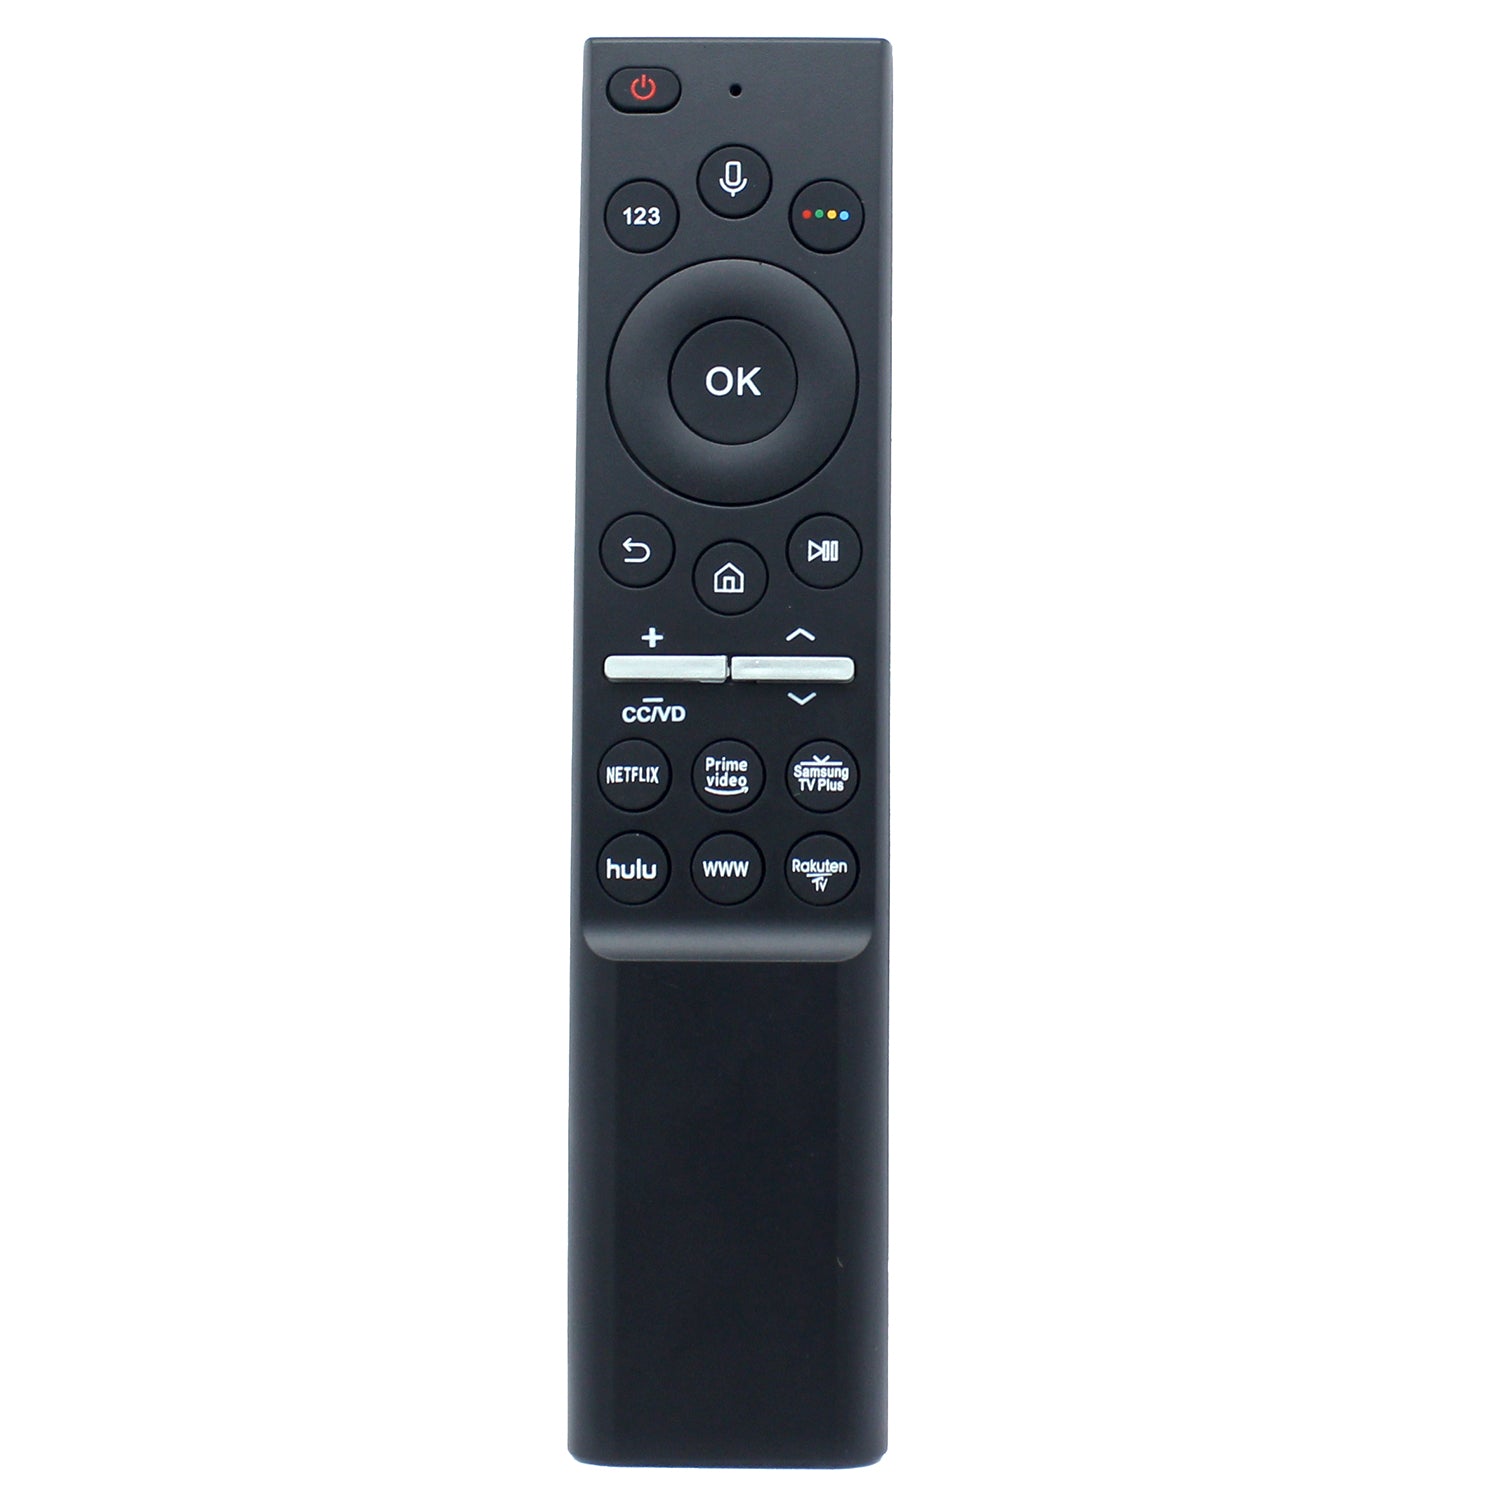 BN59-01292A Voice Remote Replacement for Samsung TV UN55MU8500 UN65MU8000